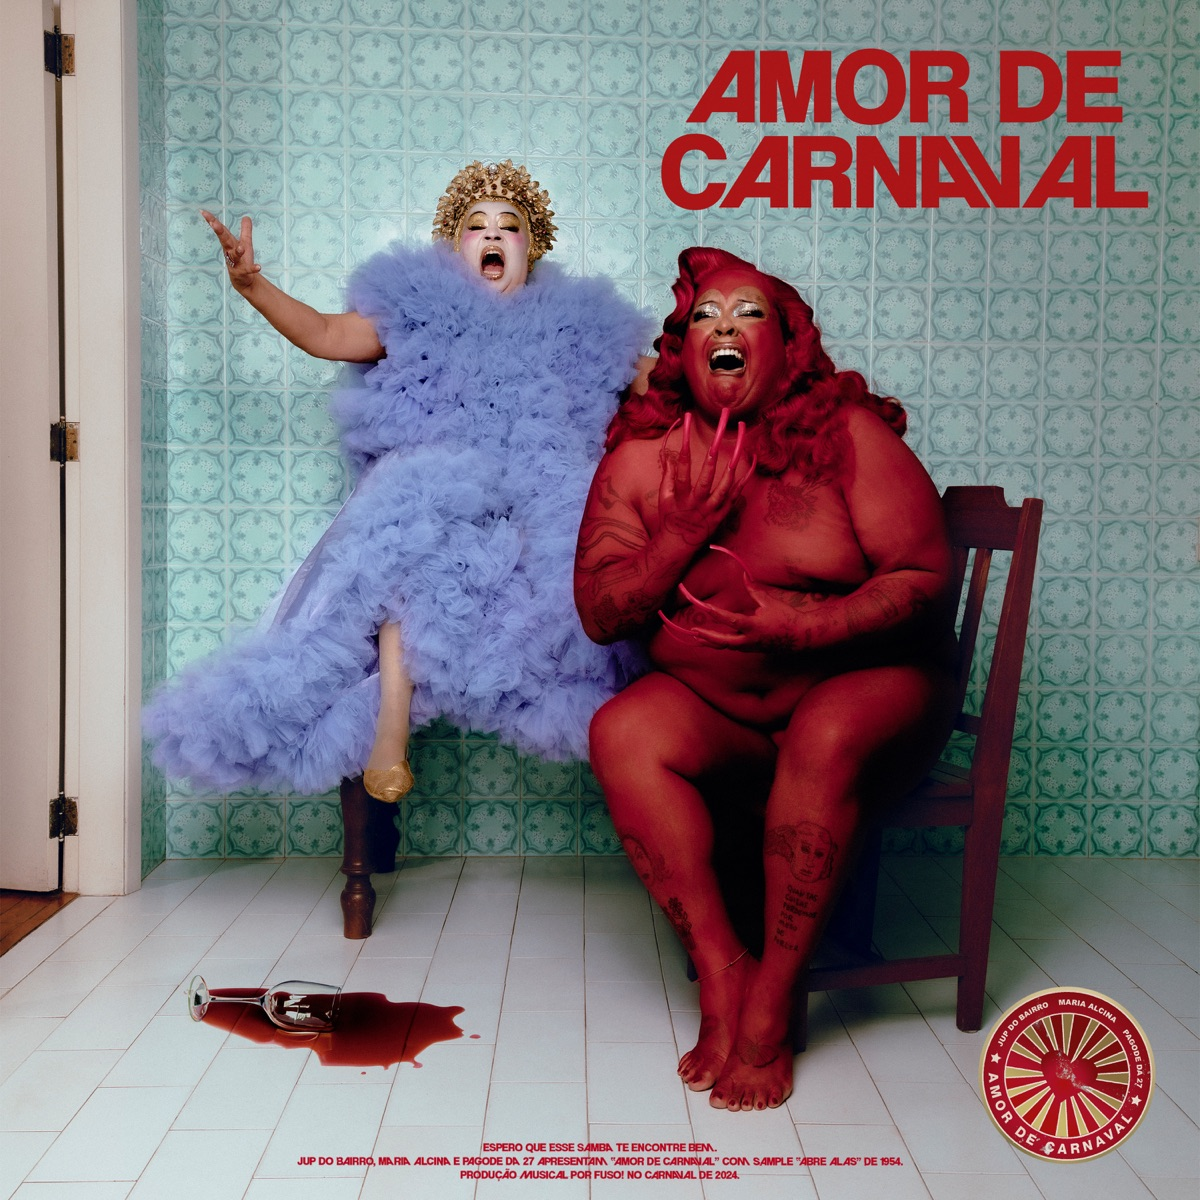 Jup do Bairro, Maria Alcina, & Pagode da 27 — Amor de Carnaval cover artwork